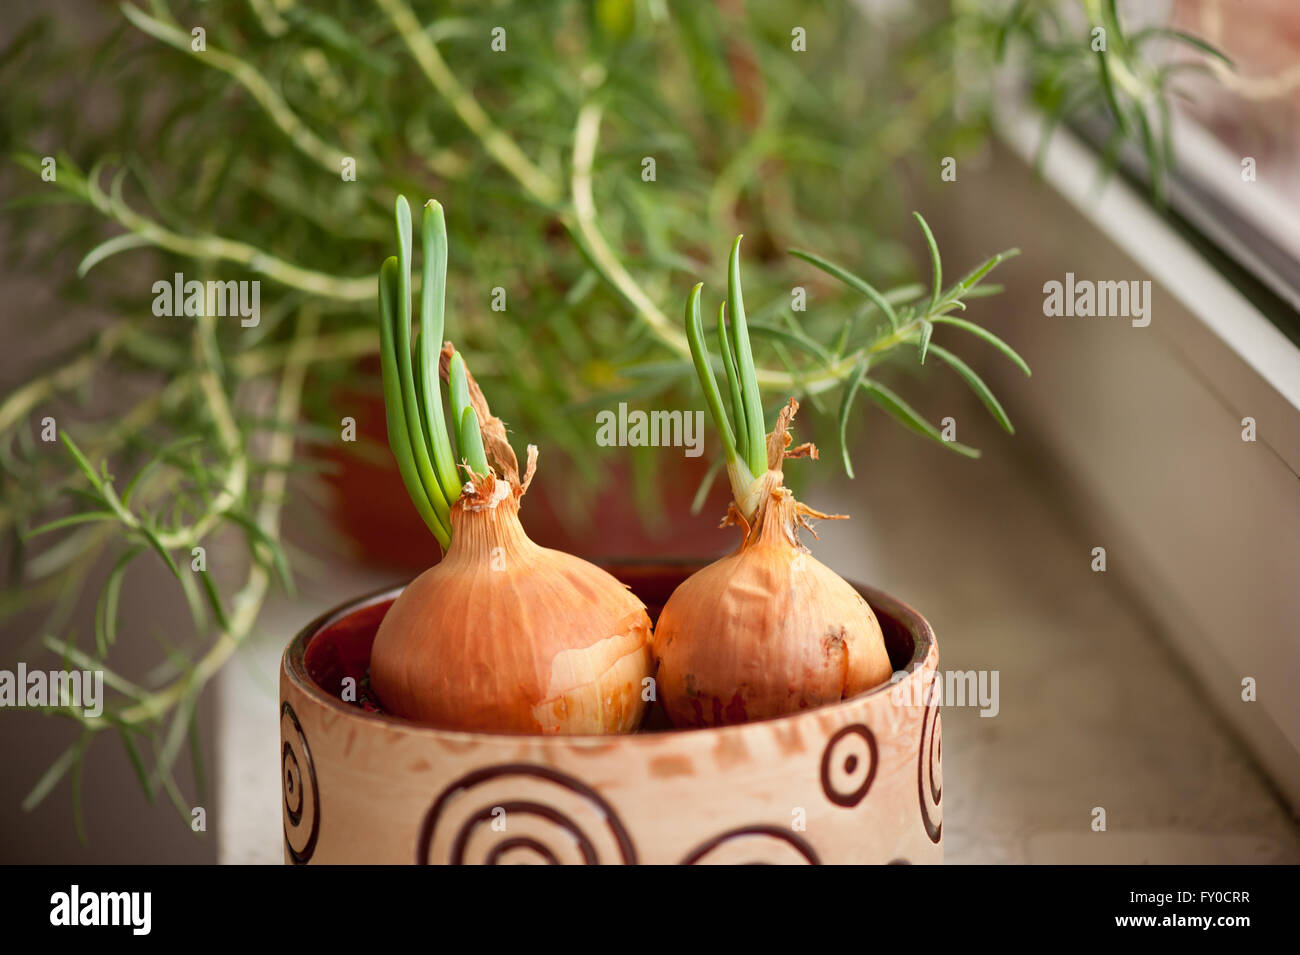 Zwiebeln mit grünen, Gemüse-Set in einer kleinen Schüssel mit Wasser in dekorative Blume Pflanzer und Rosmarin Strauch gekeimt. Stockfoto